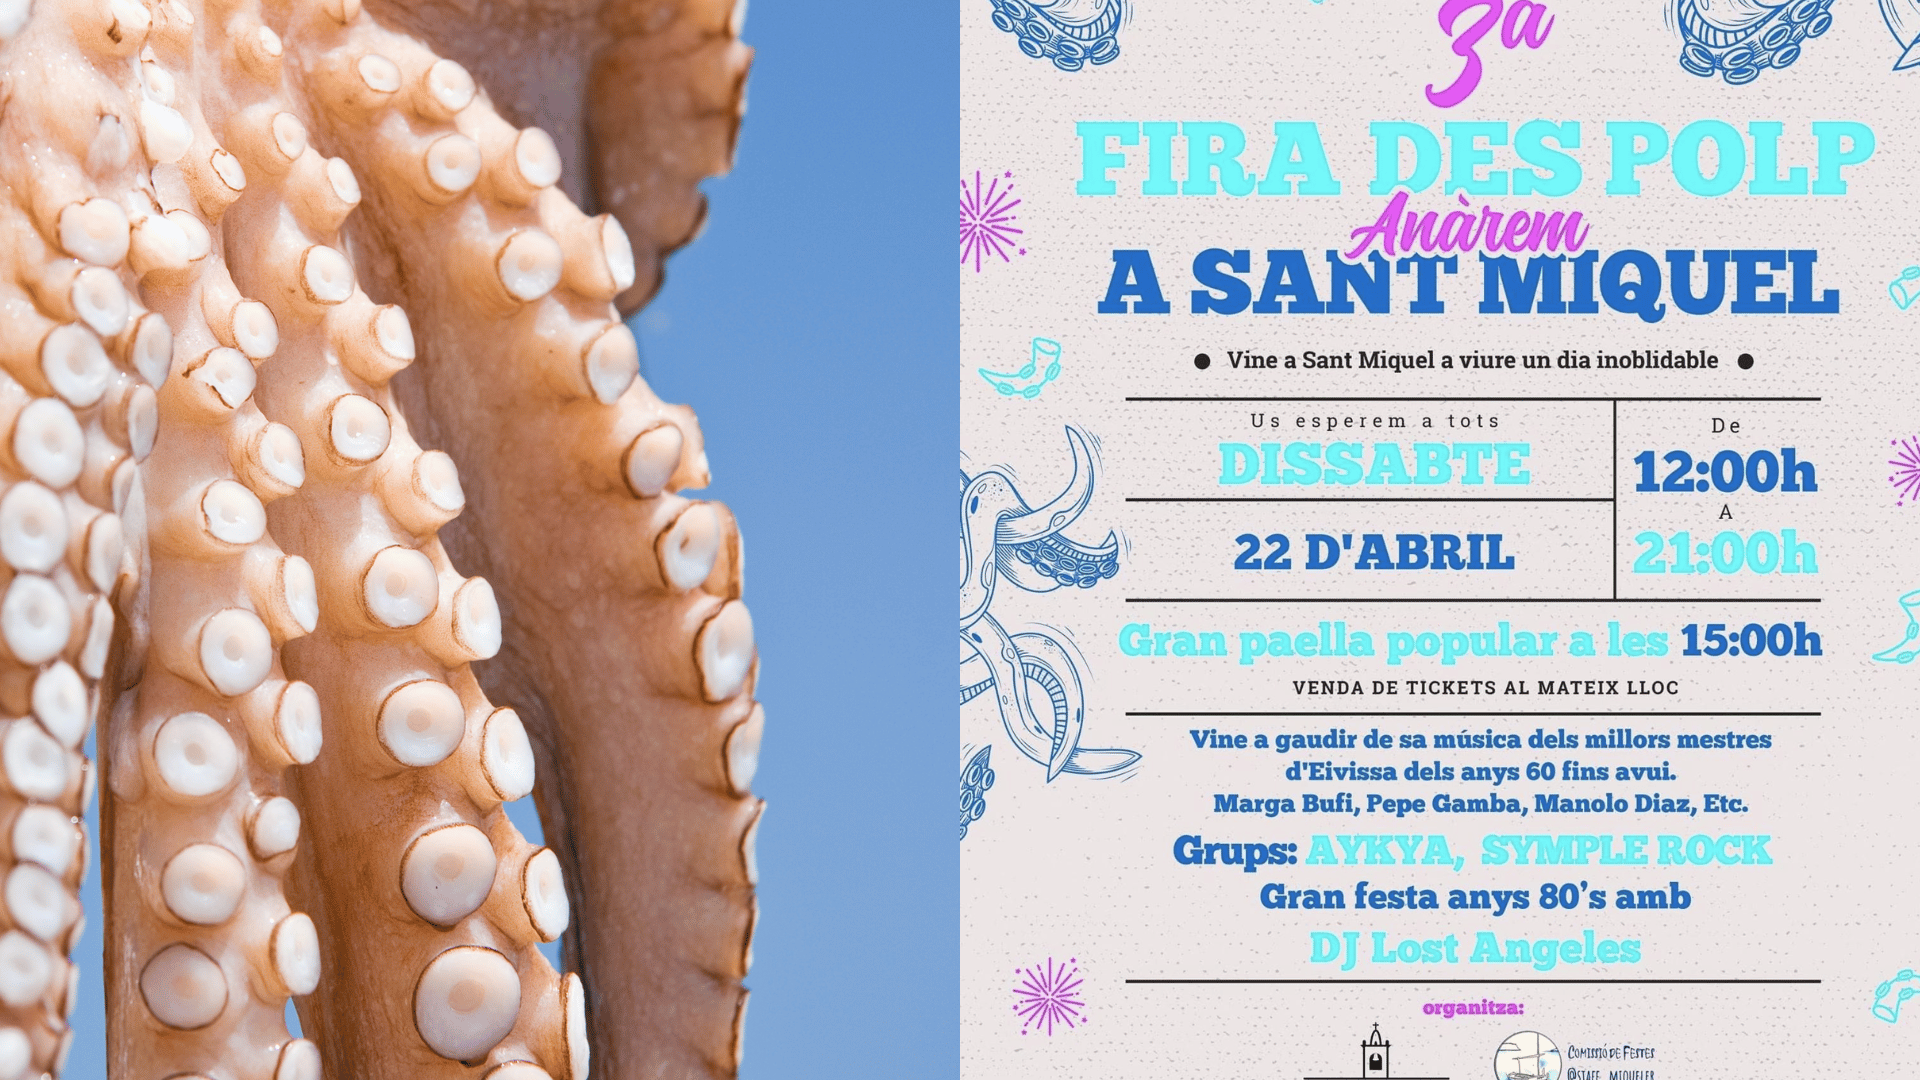 Feria del Pulpo en Sant Miquel. Ibiza - Fira des Polp Eivissa